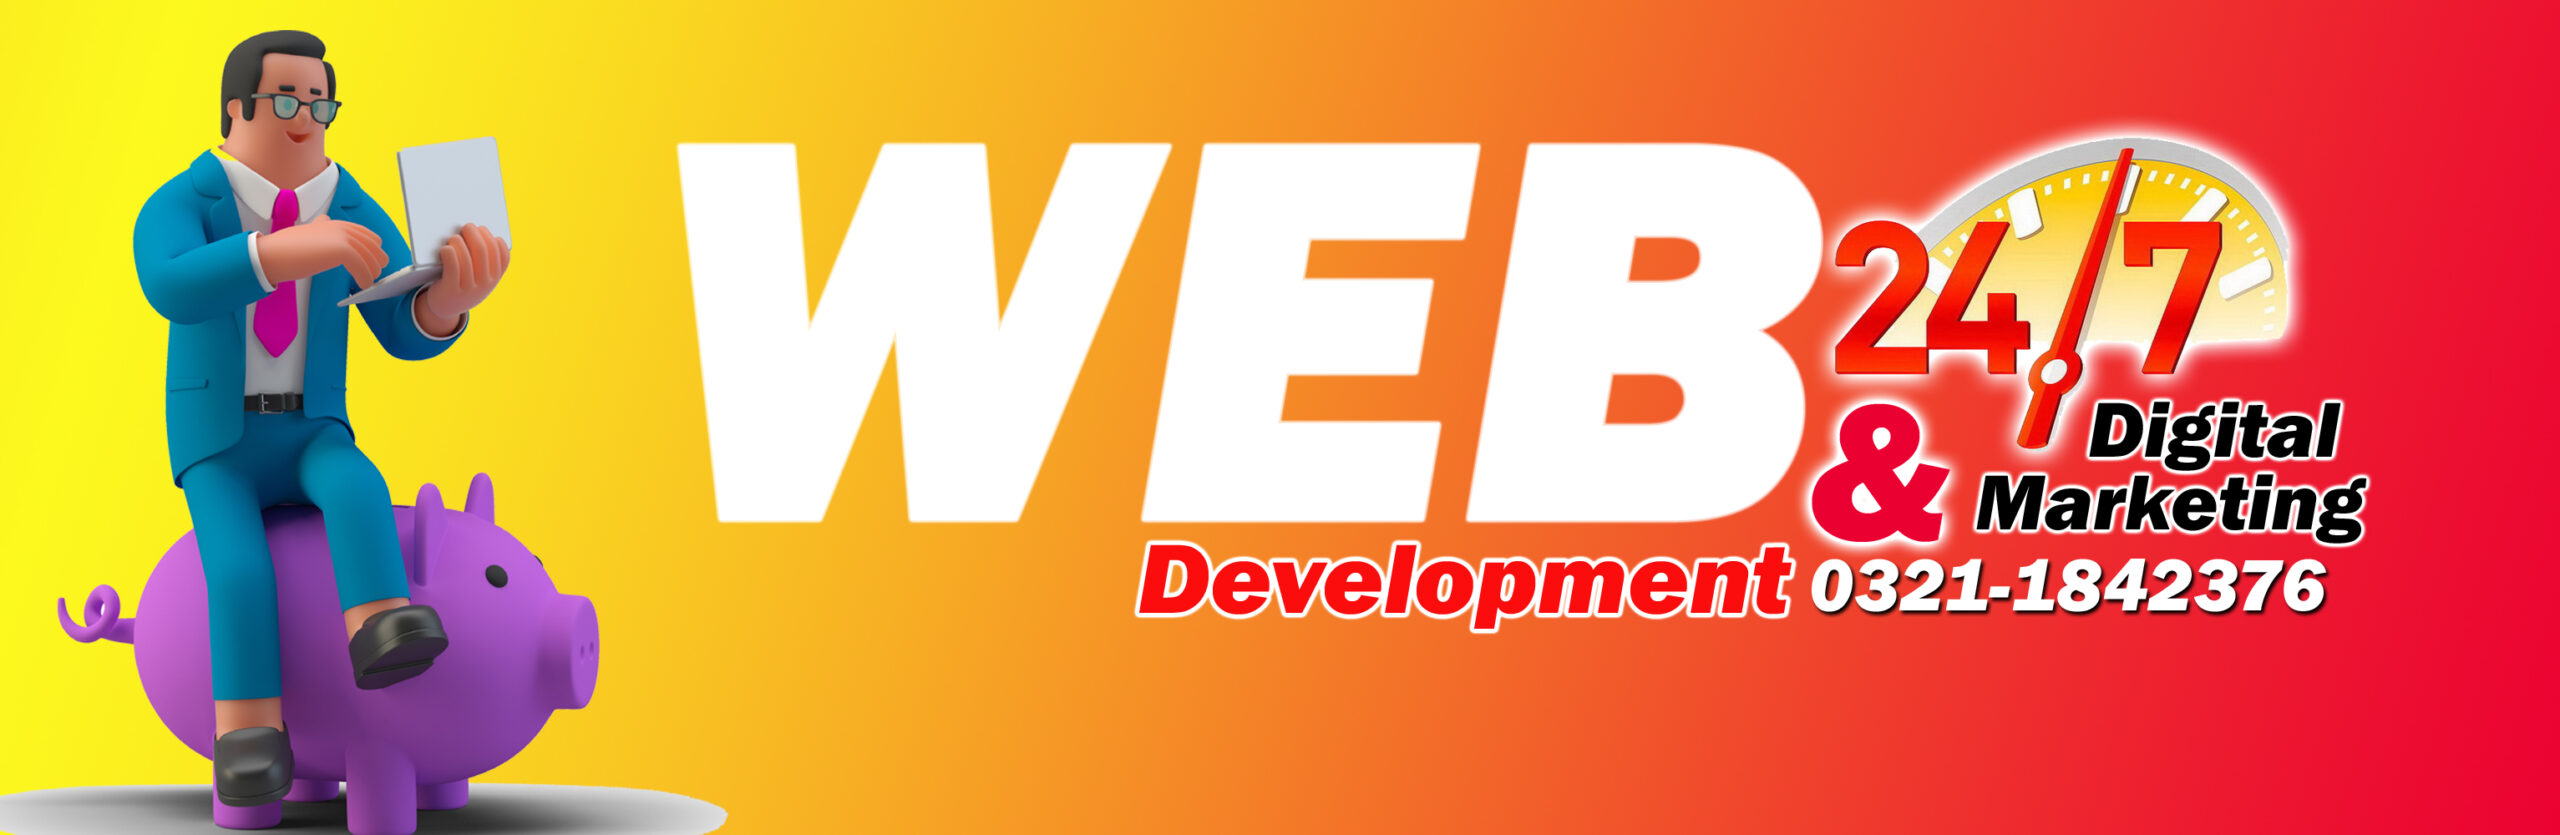 web development nkd